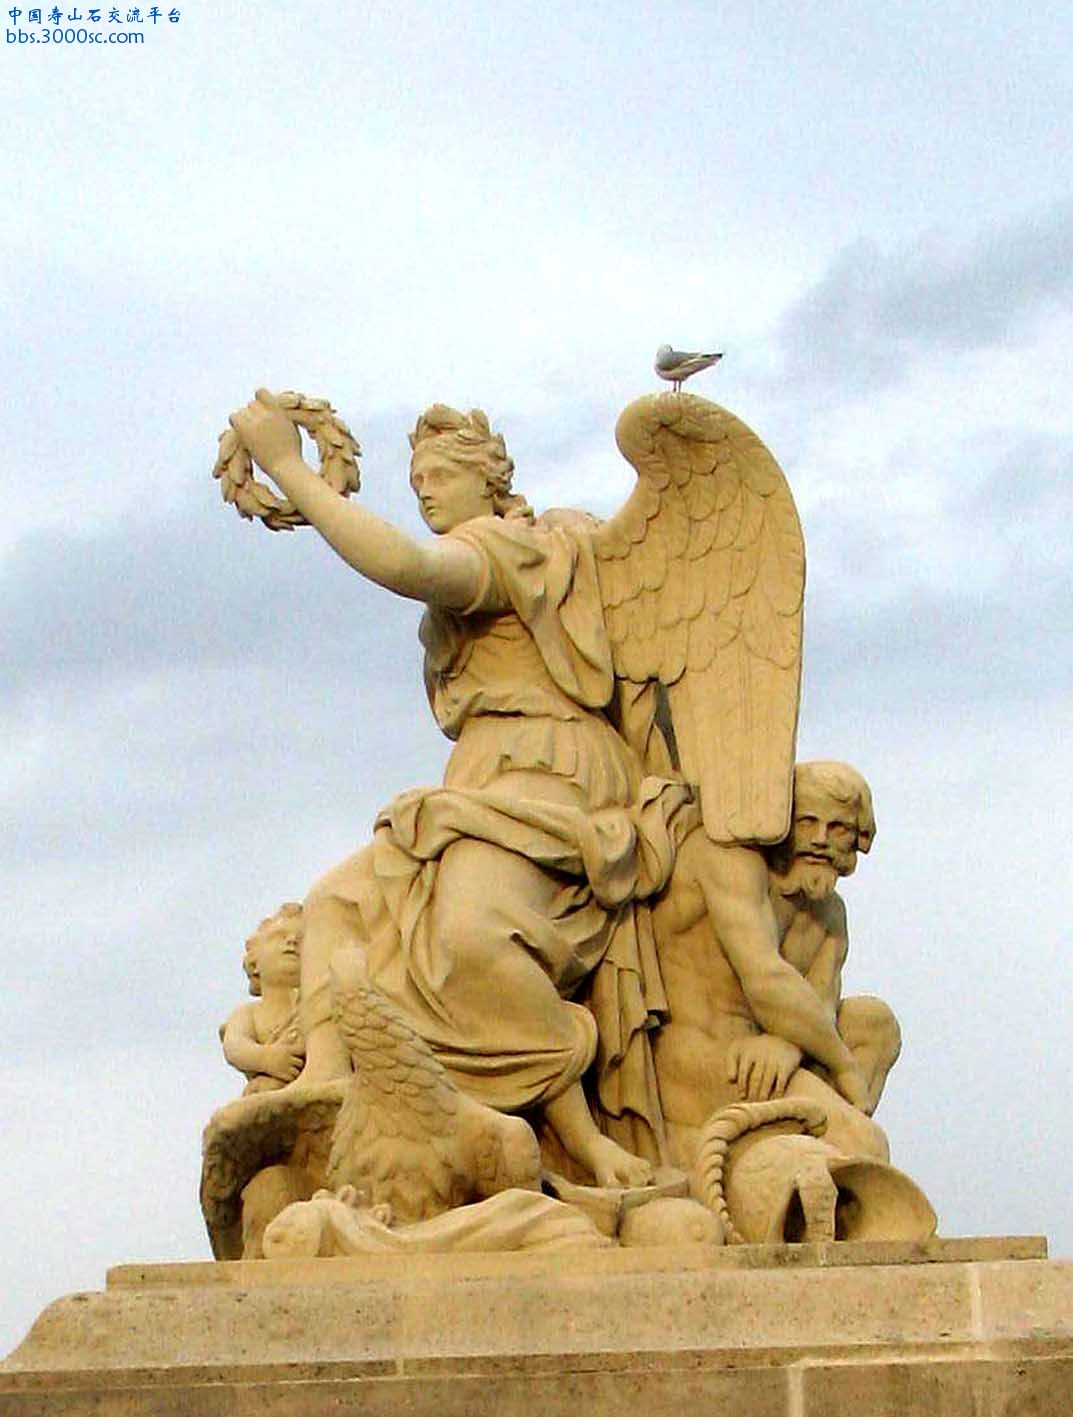 法國梵爾賽宮正門石像-A1.jpg